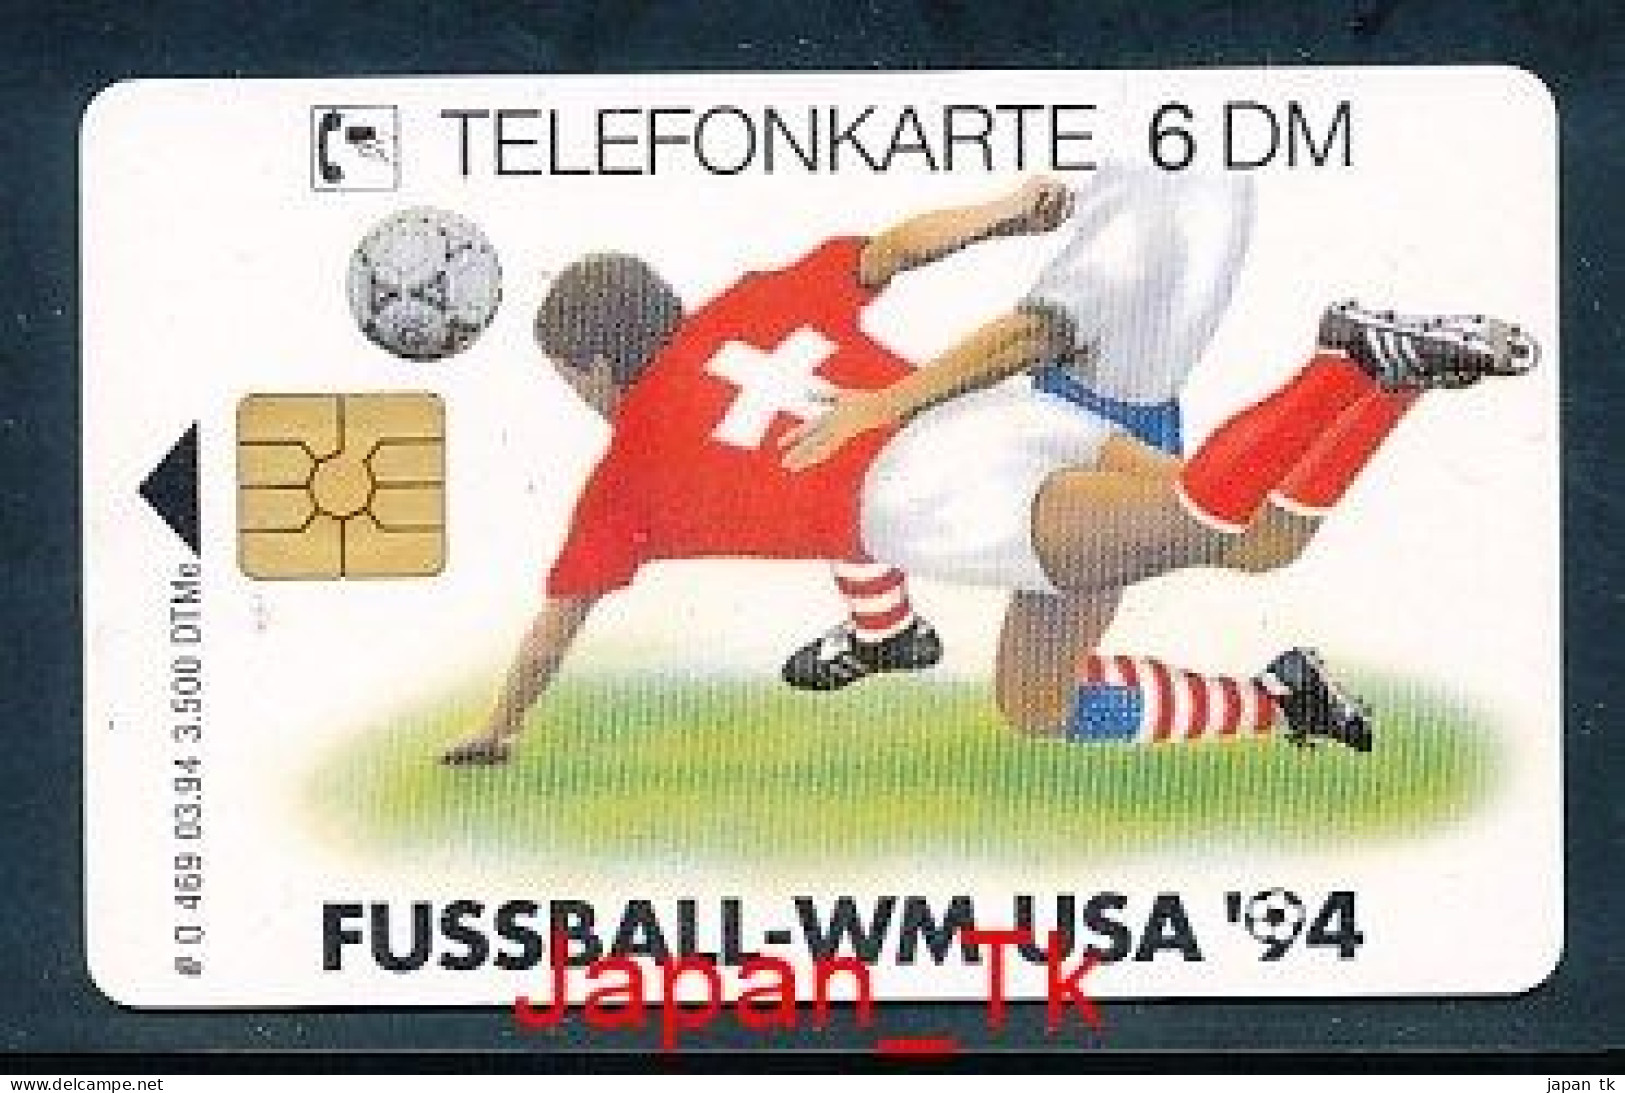 GERMANY O 469 94 Fußball WM USA 94 - Aufl  3 500 - Siehe Scan - O-Series: Kundenserie Vom Sammlerservice Ausgeschlossen